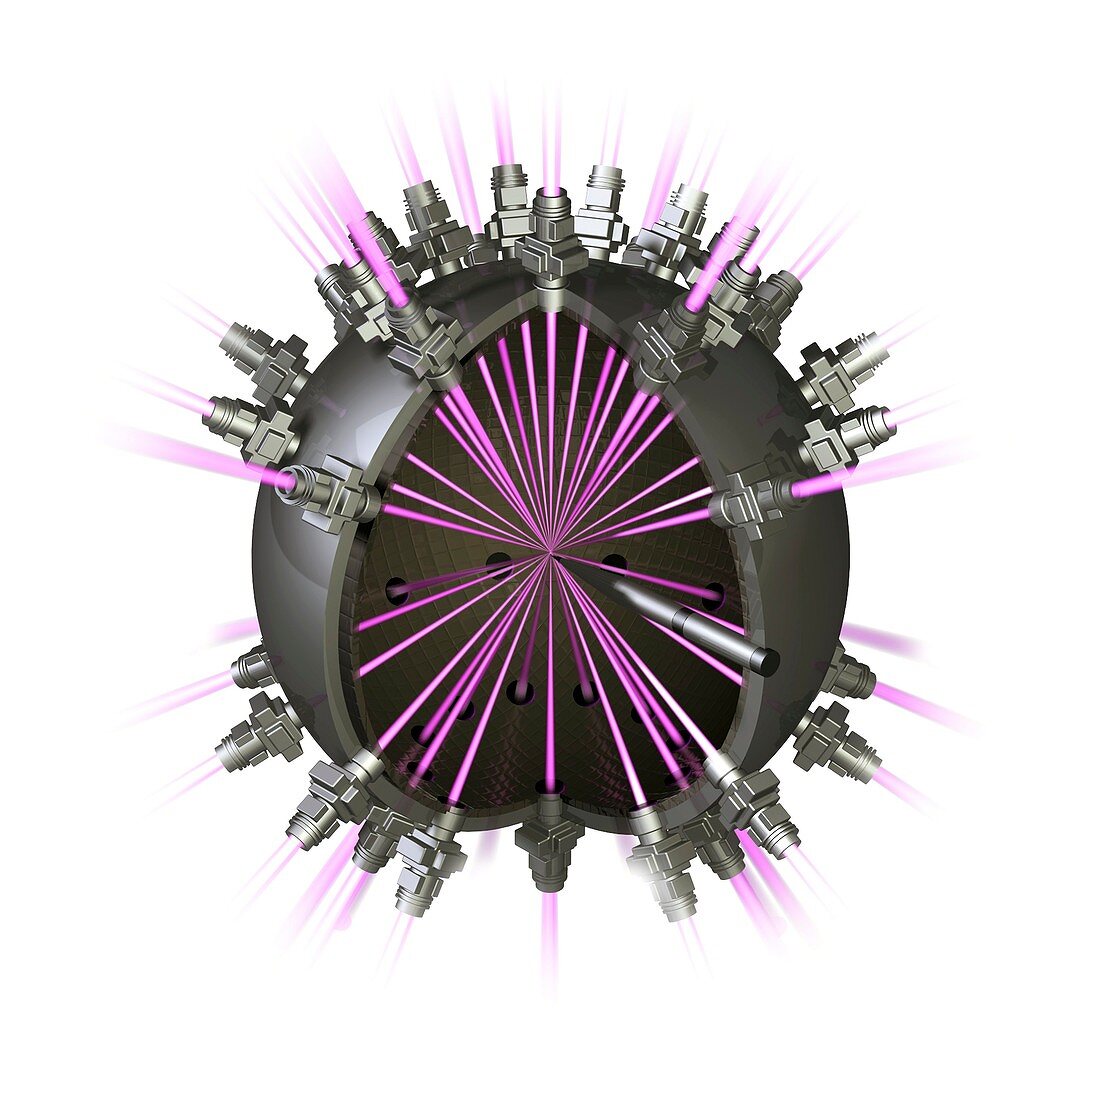 Fusion reactor,conceptual image